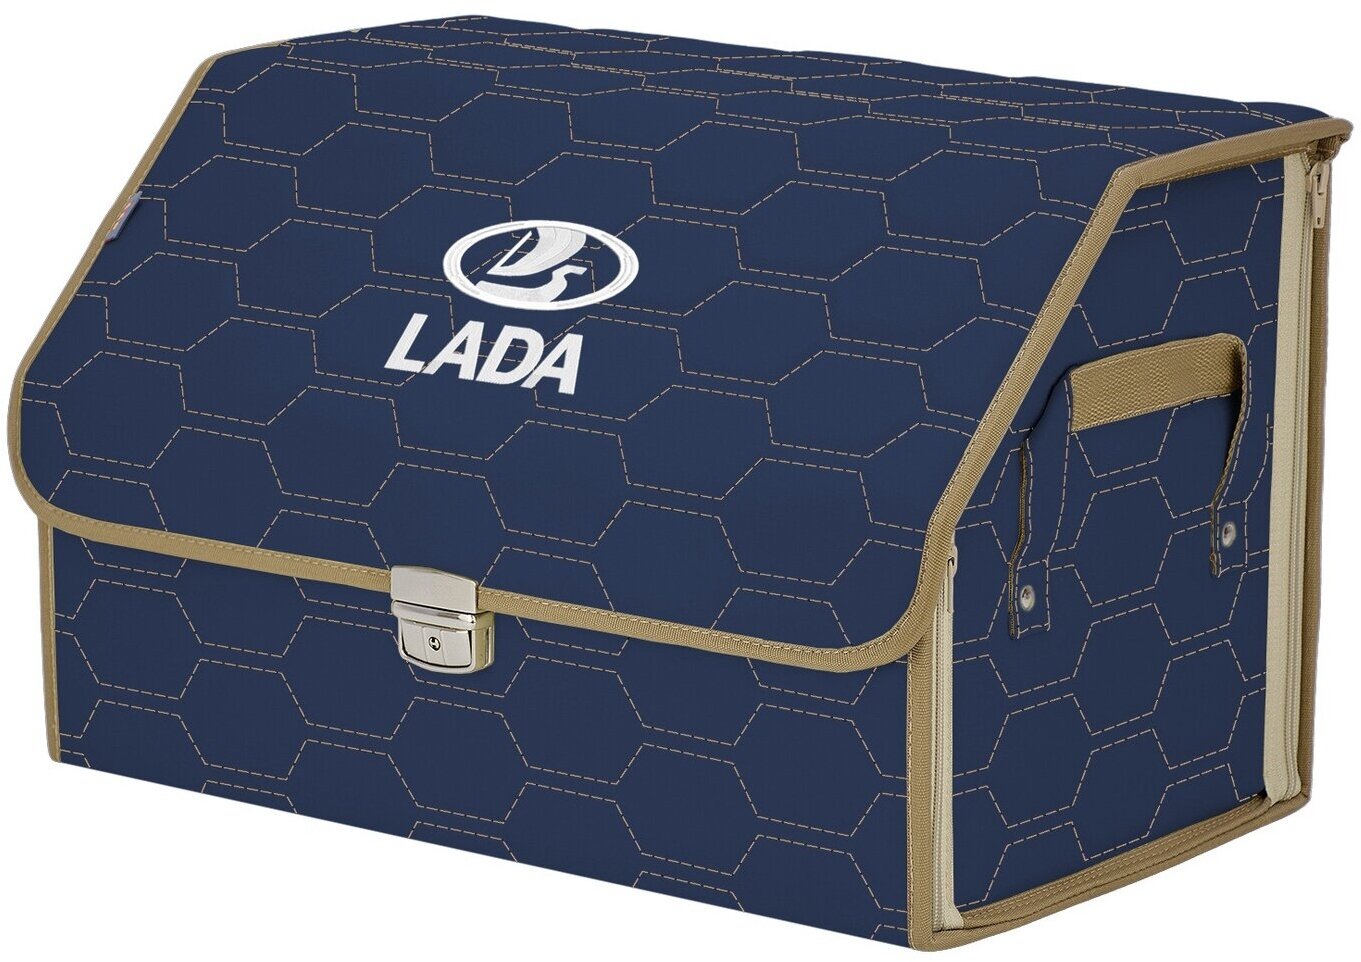 Органайзер-саквояж в багажник "Союз Премиум" (размер L). Цвет: синий с бежевой прострочкой Соты и вышивкой LADA (лада).